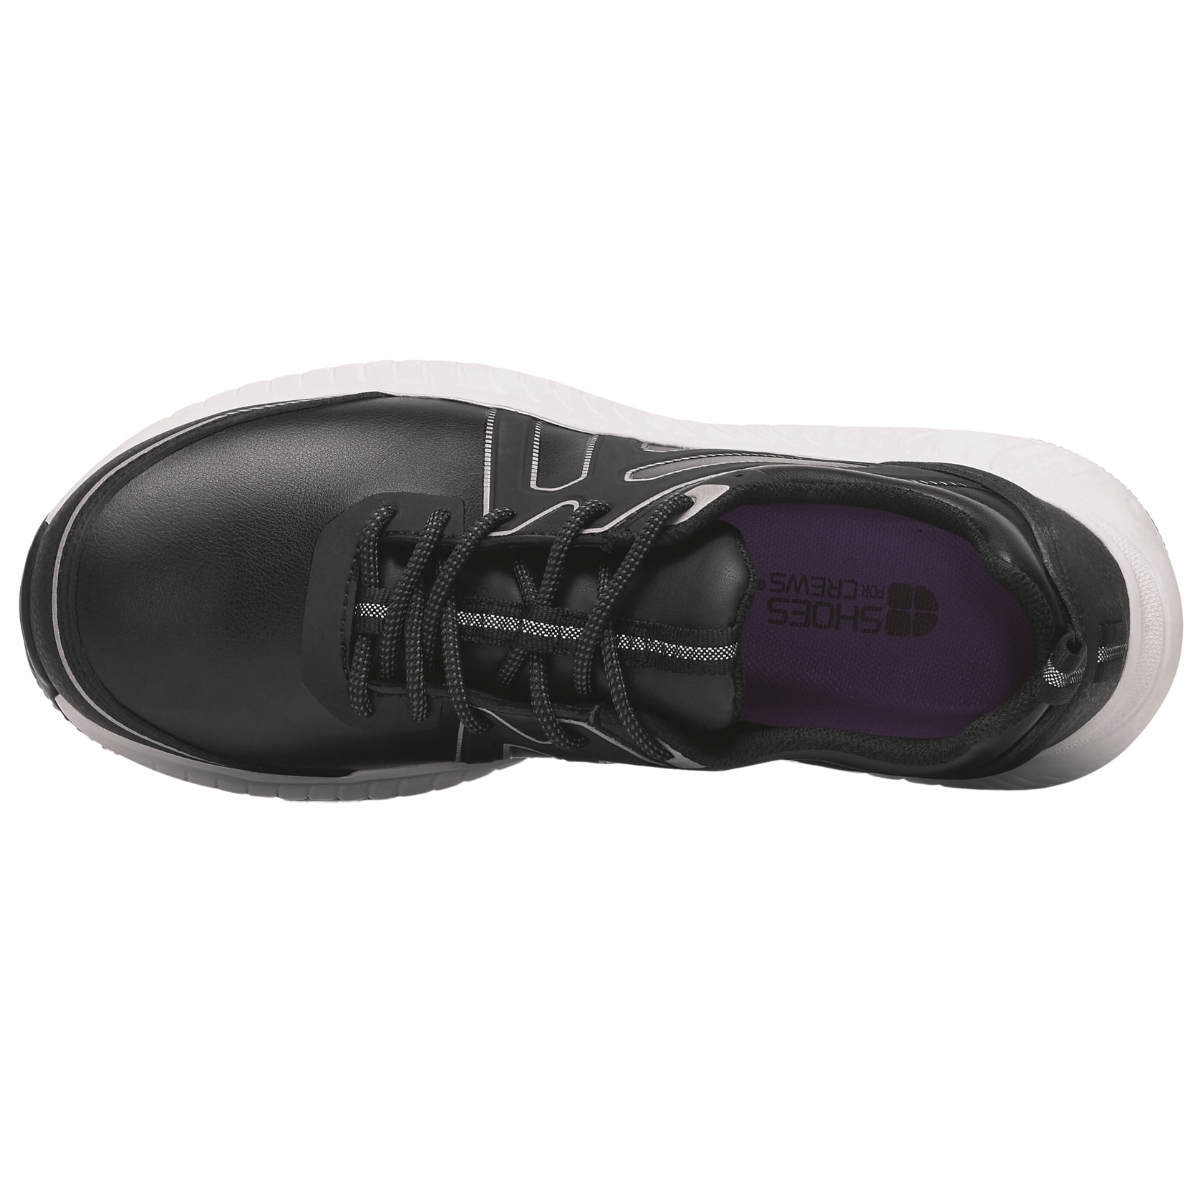 Zapato deportivo negro con suela blanca de poliéster y microfibra